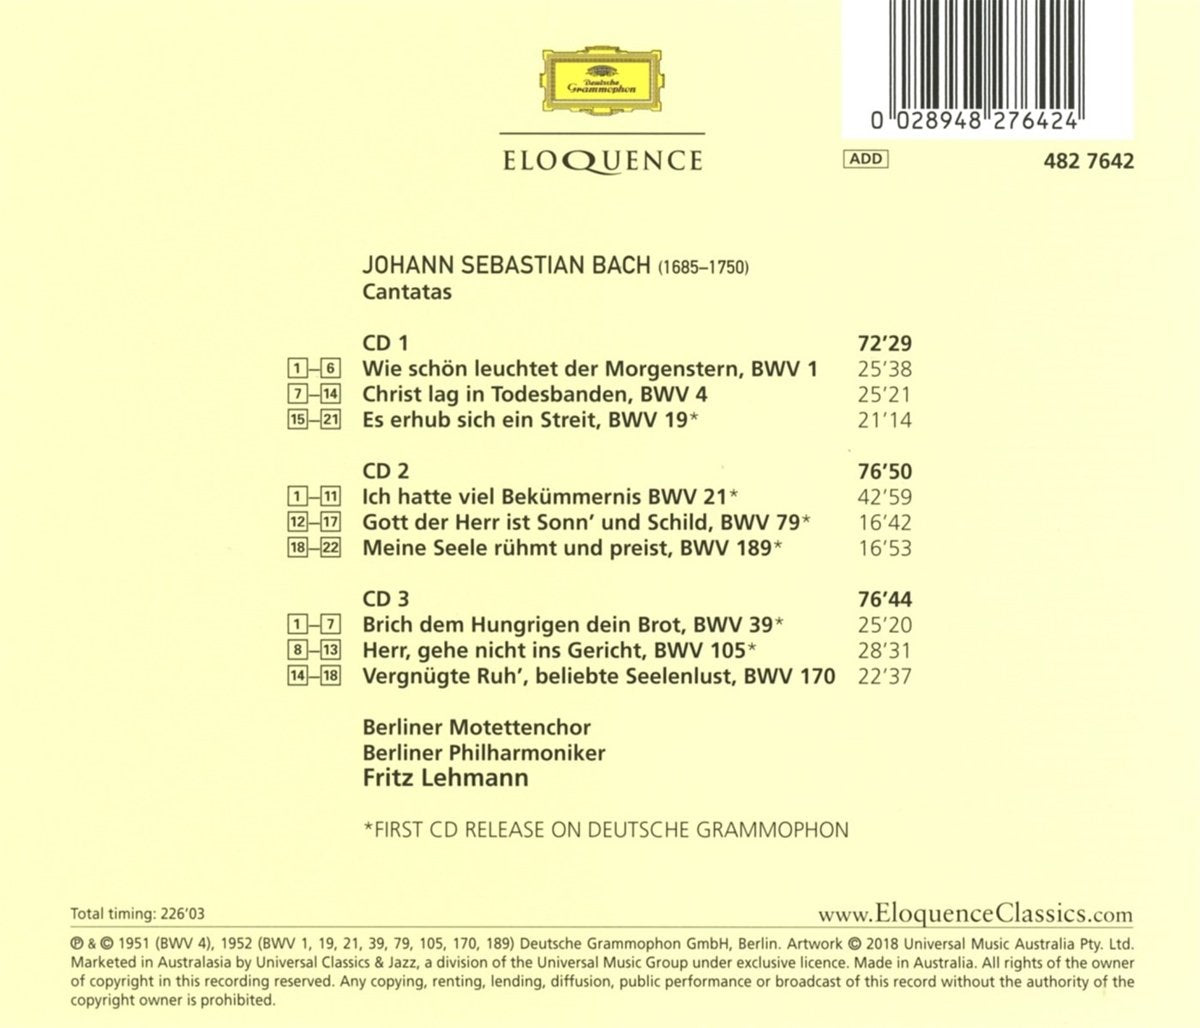 Bach: Nine Sacred Cantatas - Fritz Lehman, Berlin Philharmonic (3 CDs)